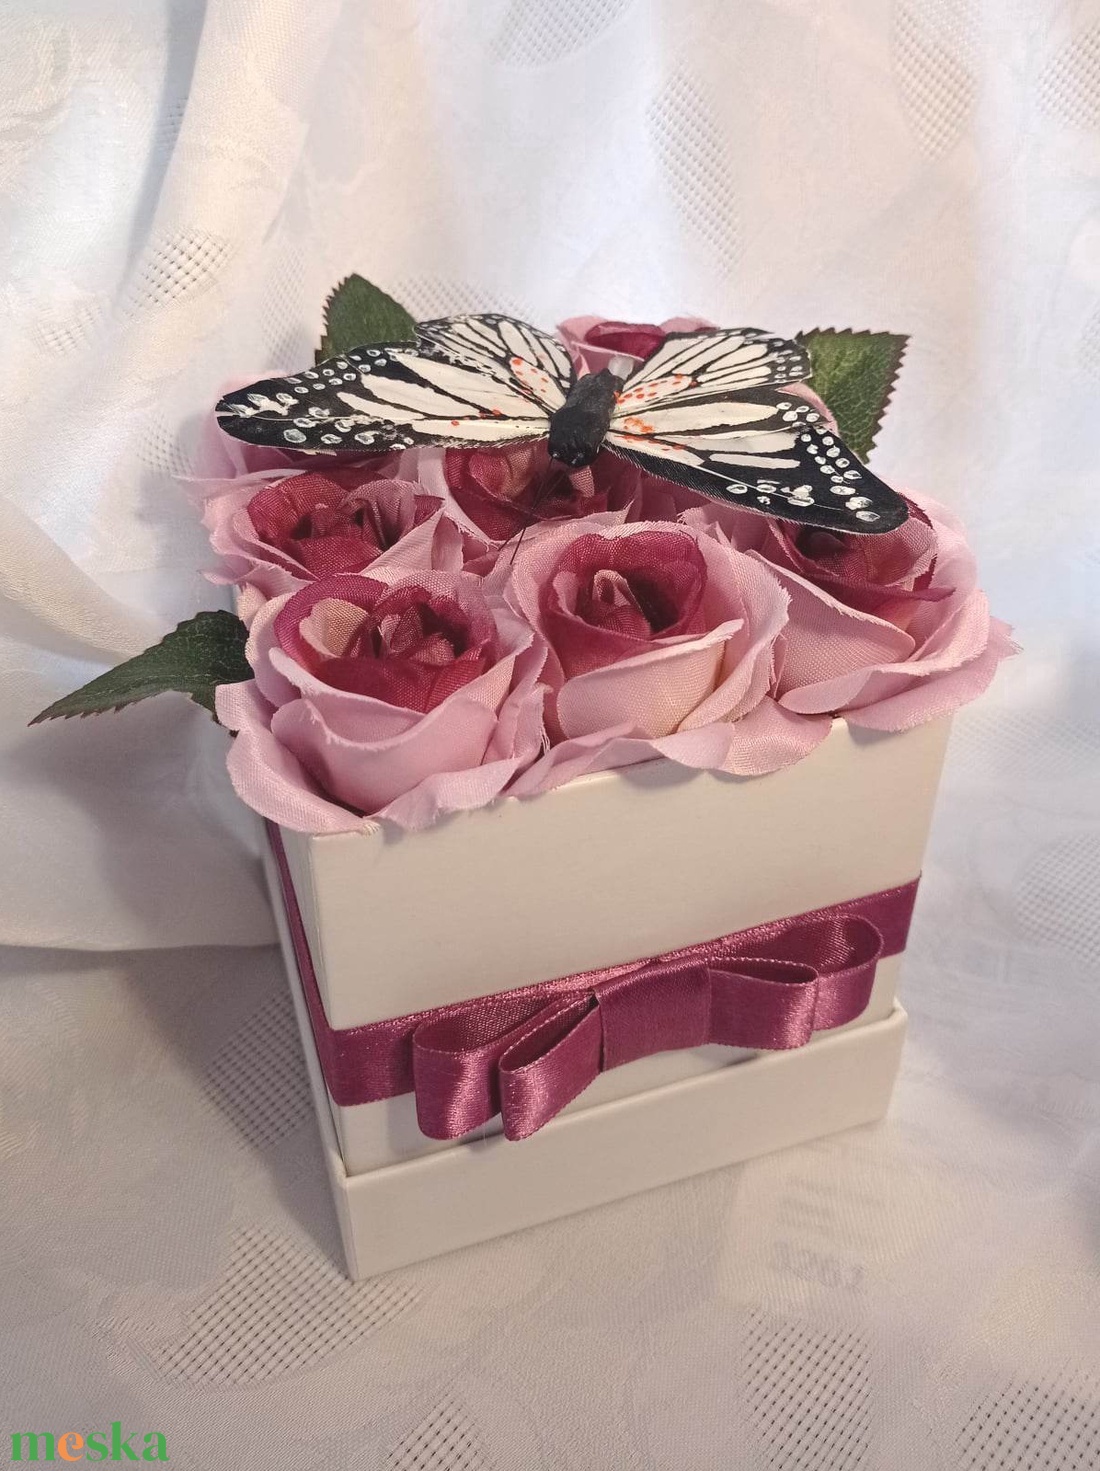 Lepkés rózsadoboz (mályva) virágbox selyemrózsa pillangóval névnap születésnap anyák napja nőnap ballagás - otthon & lakás - dekoráció - virágdísz és tartó - virágbox, virágdoboz - Meska.hu